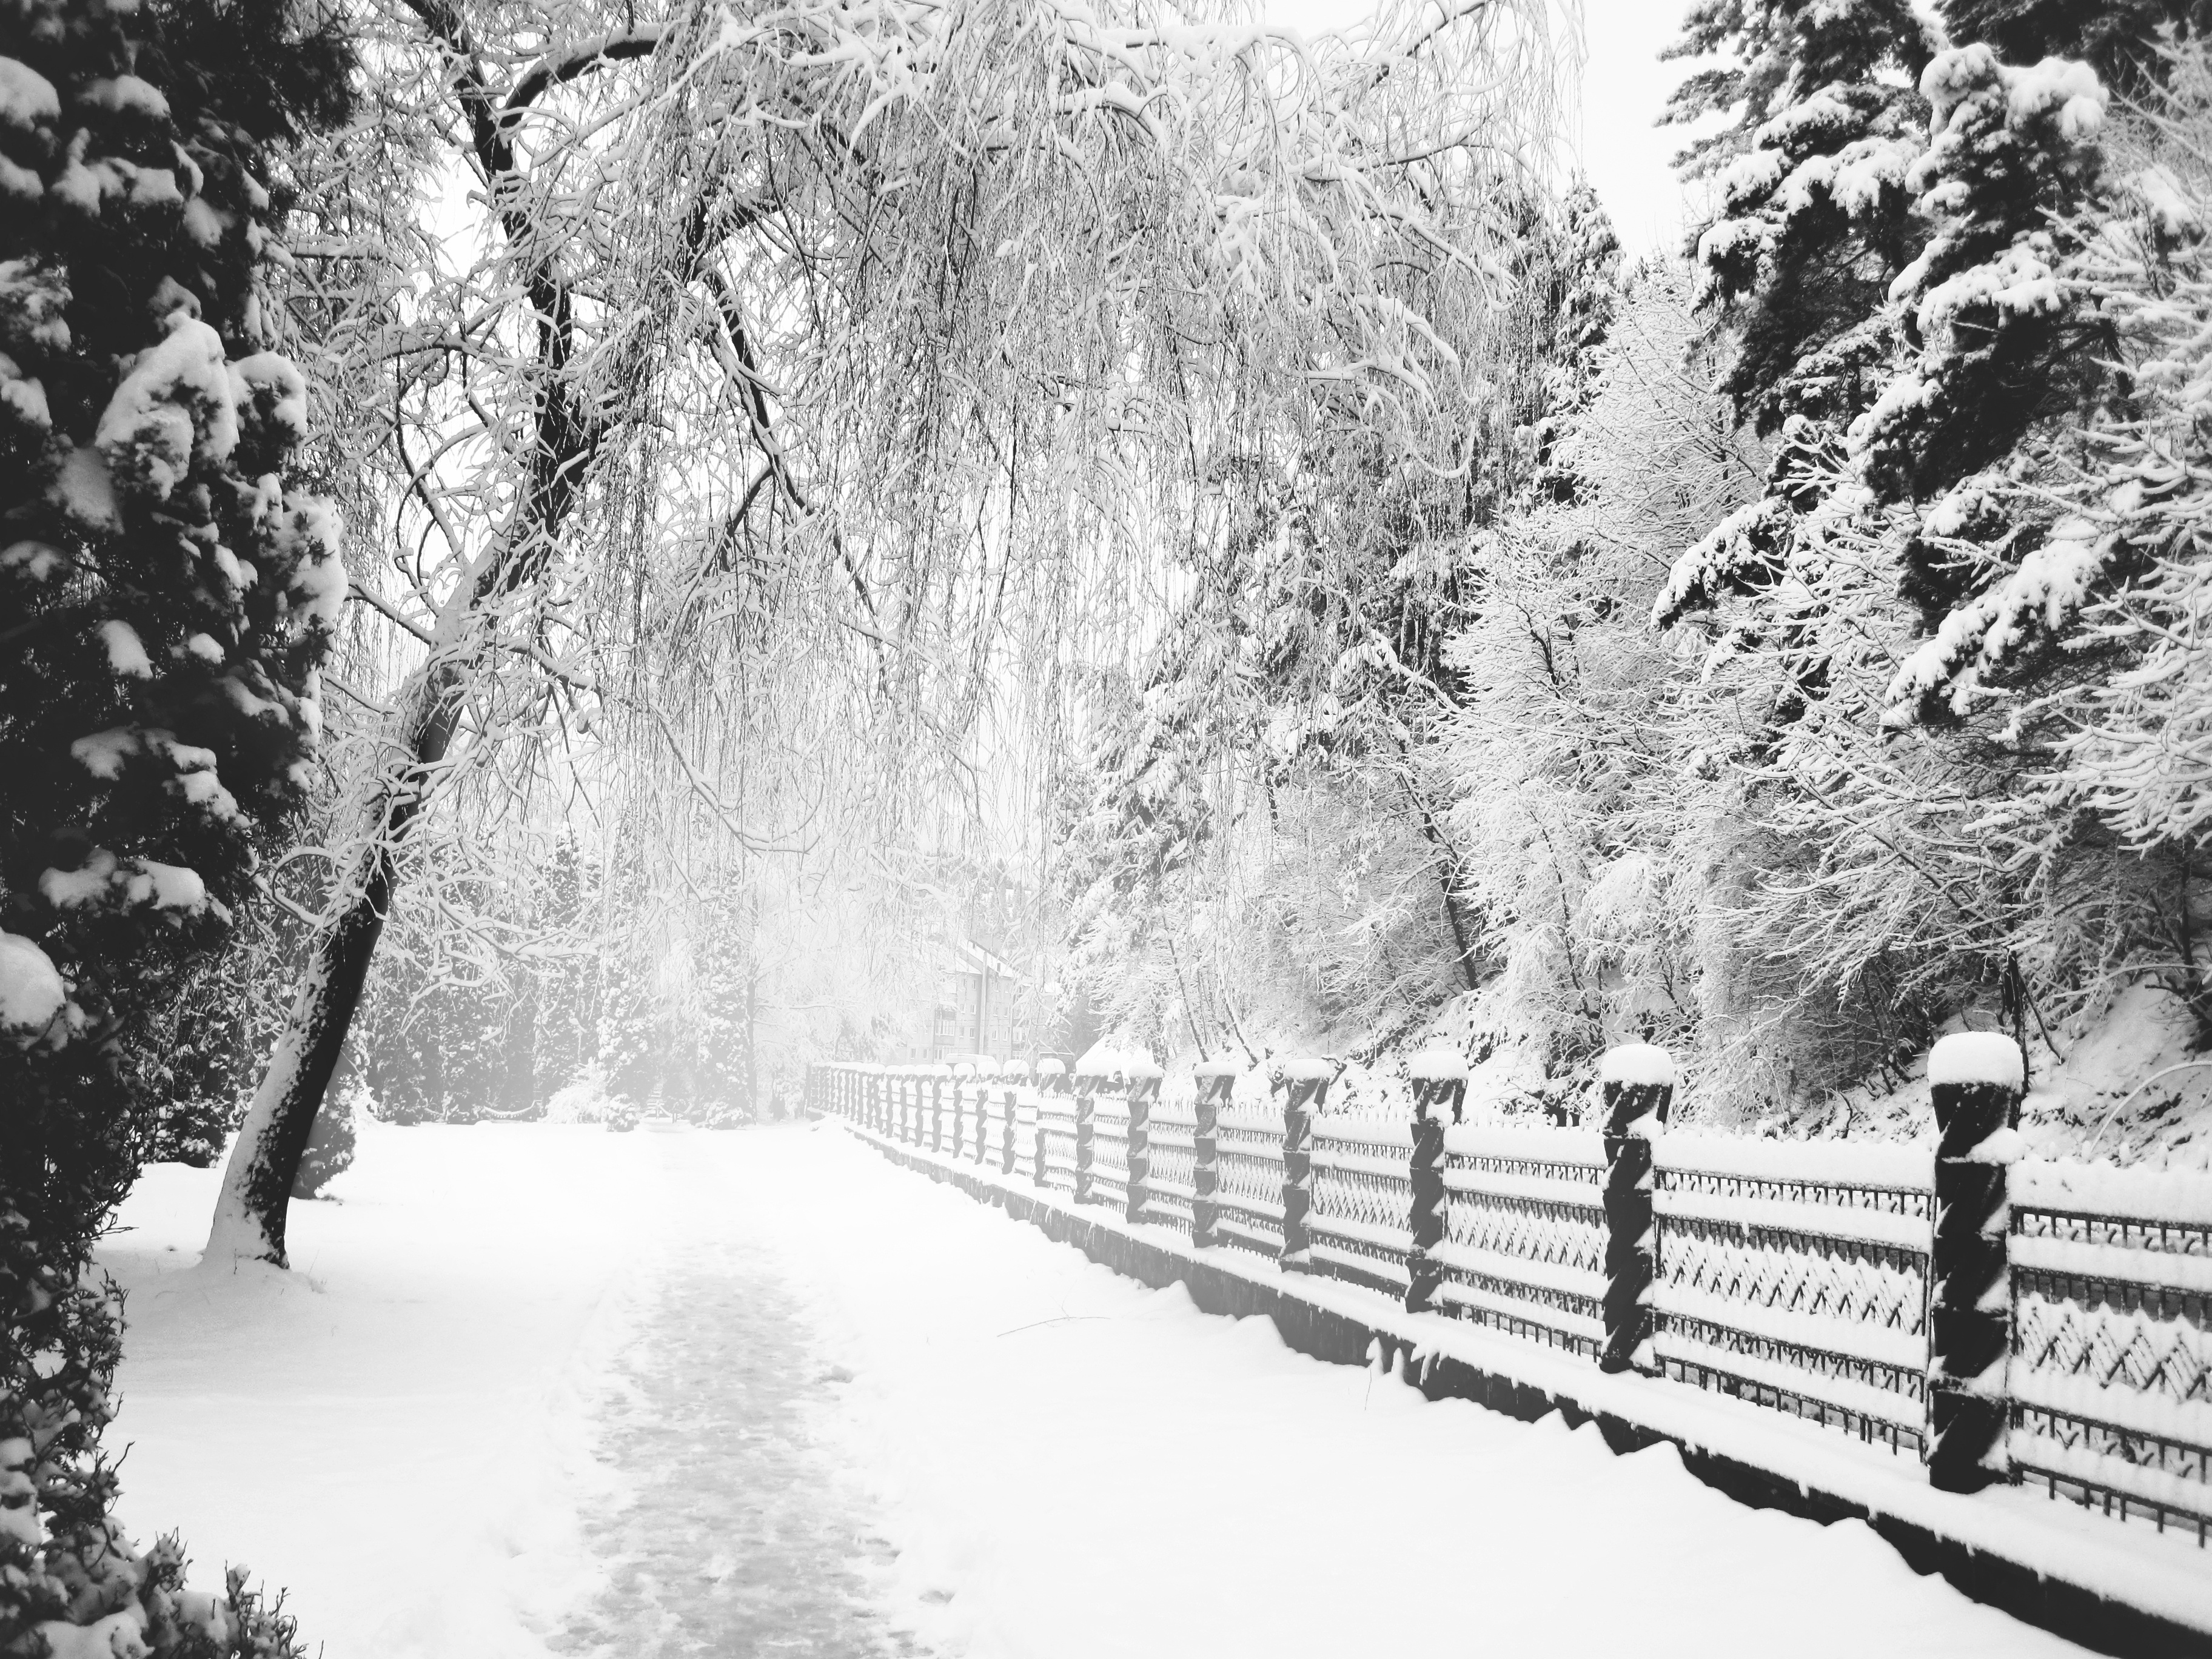 Скачать обои бесплатно Зима, Снег, Дорога, Дерево, Белый, Ограда, Фотографии картинка на рабочий стол ПК